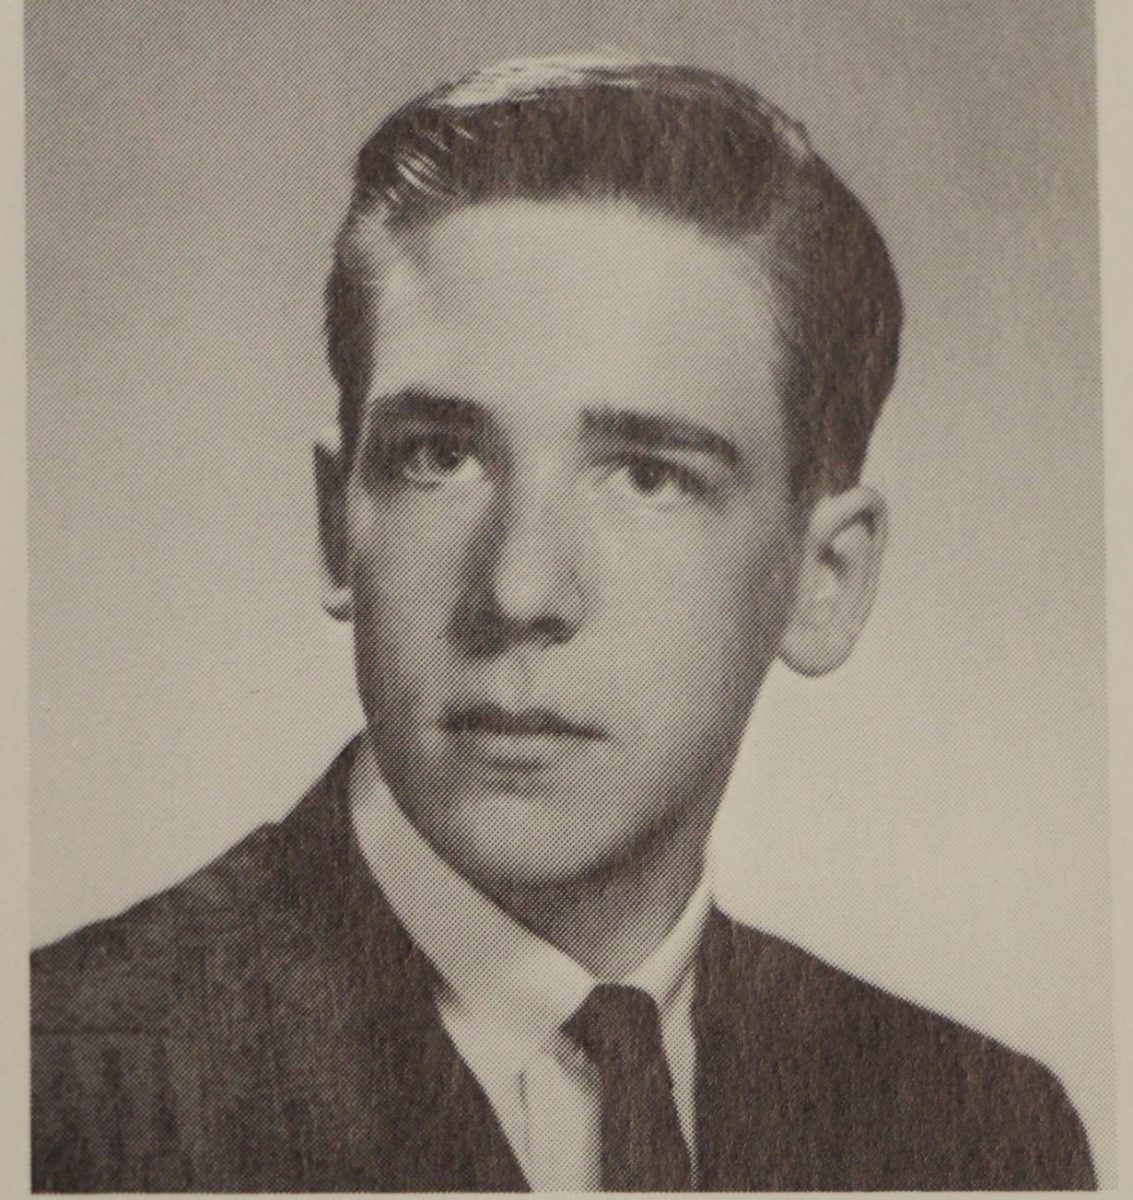 Jacob Baker in 1963